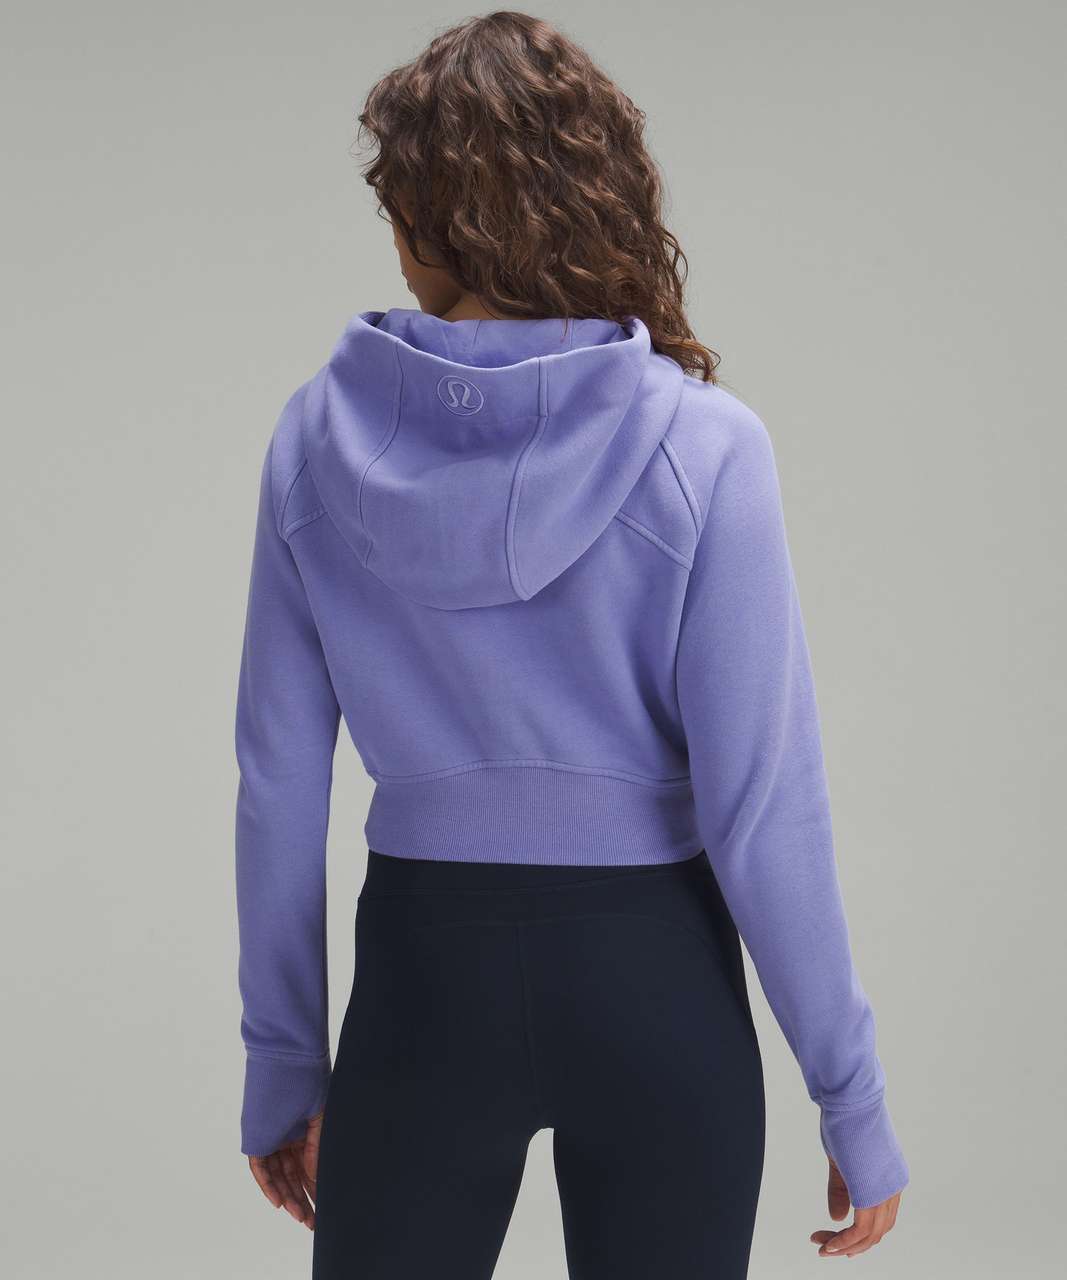 lululemon scuba hoodie wisteria purple Archives - StyledJen